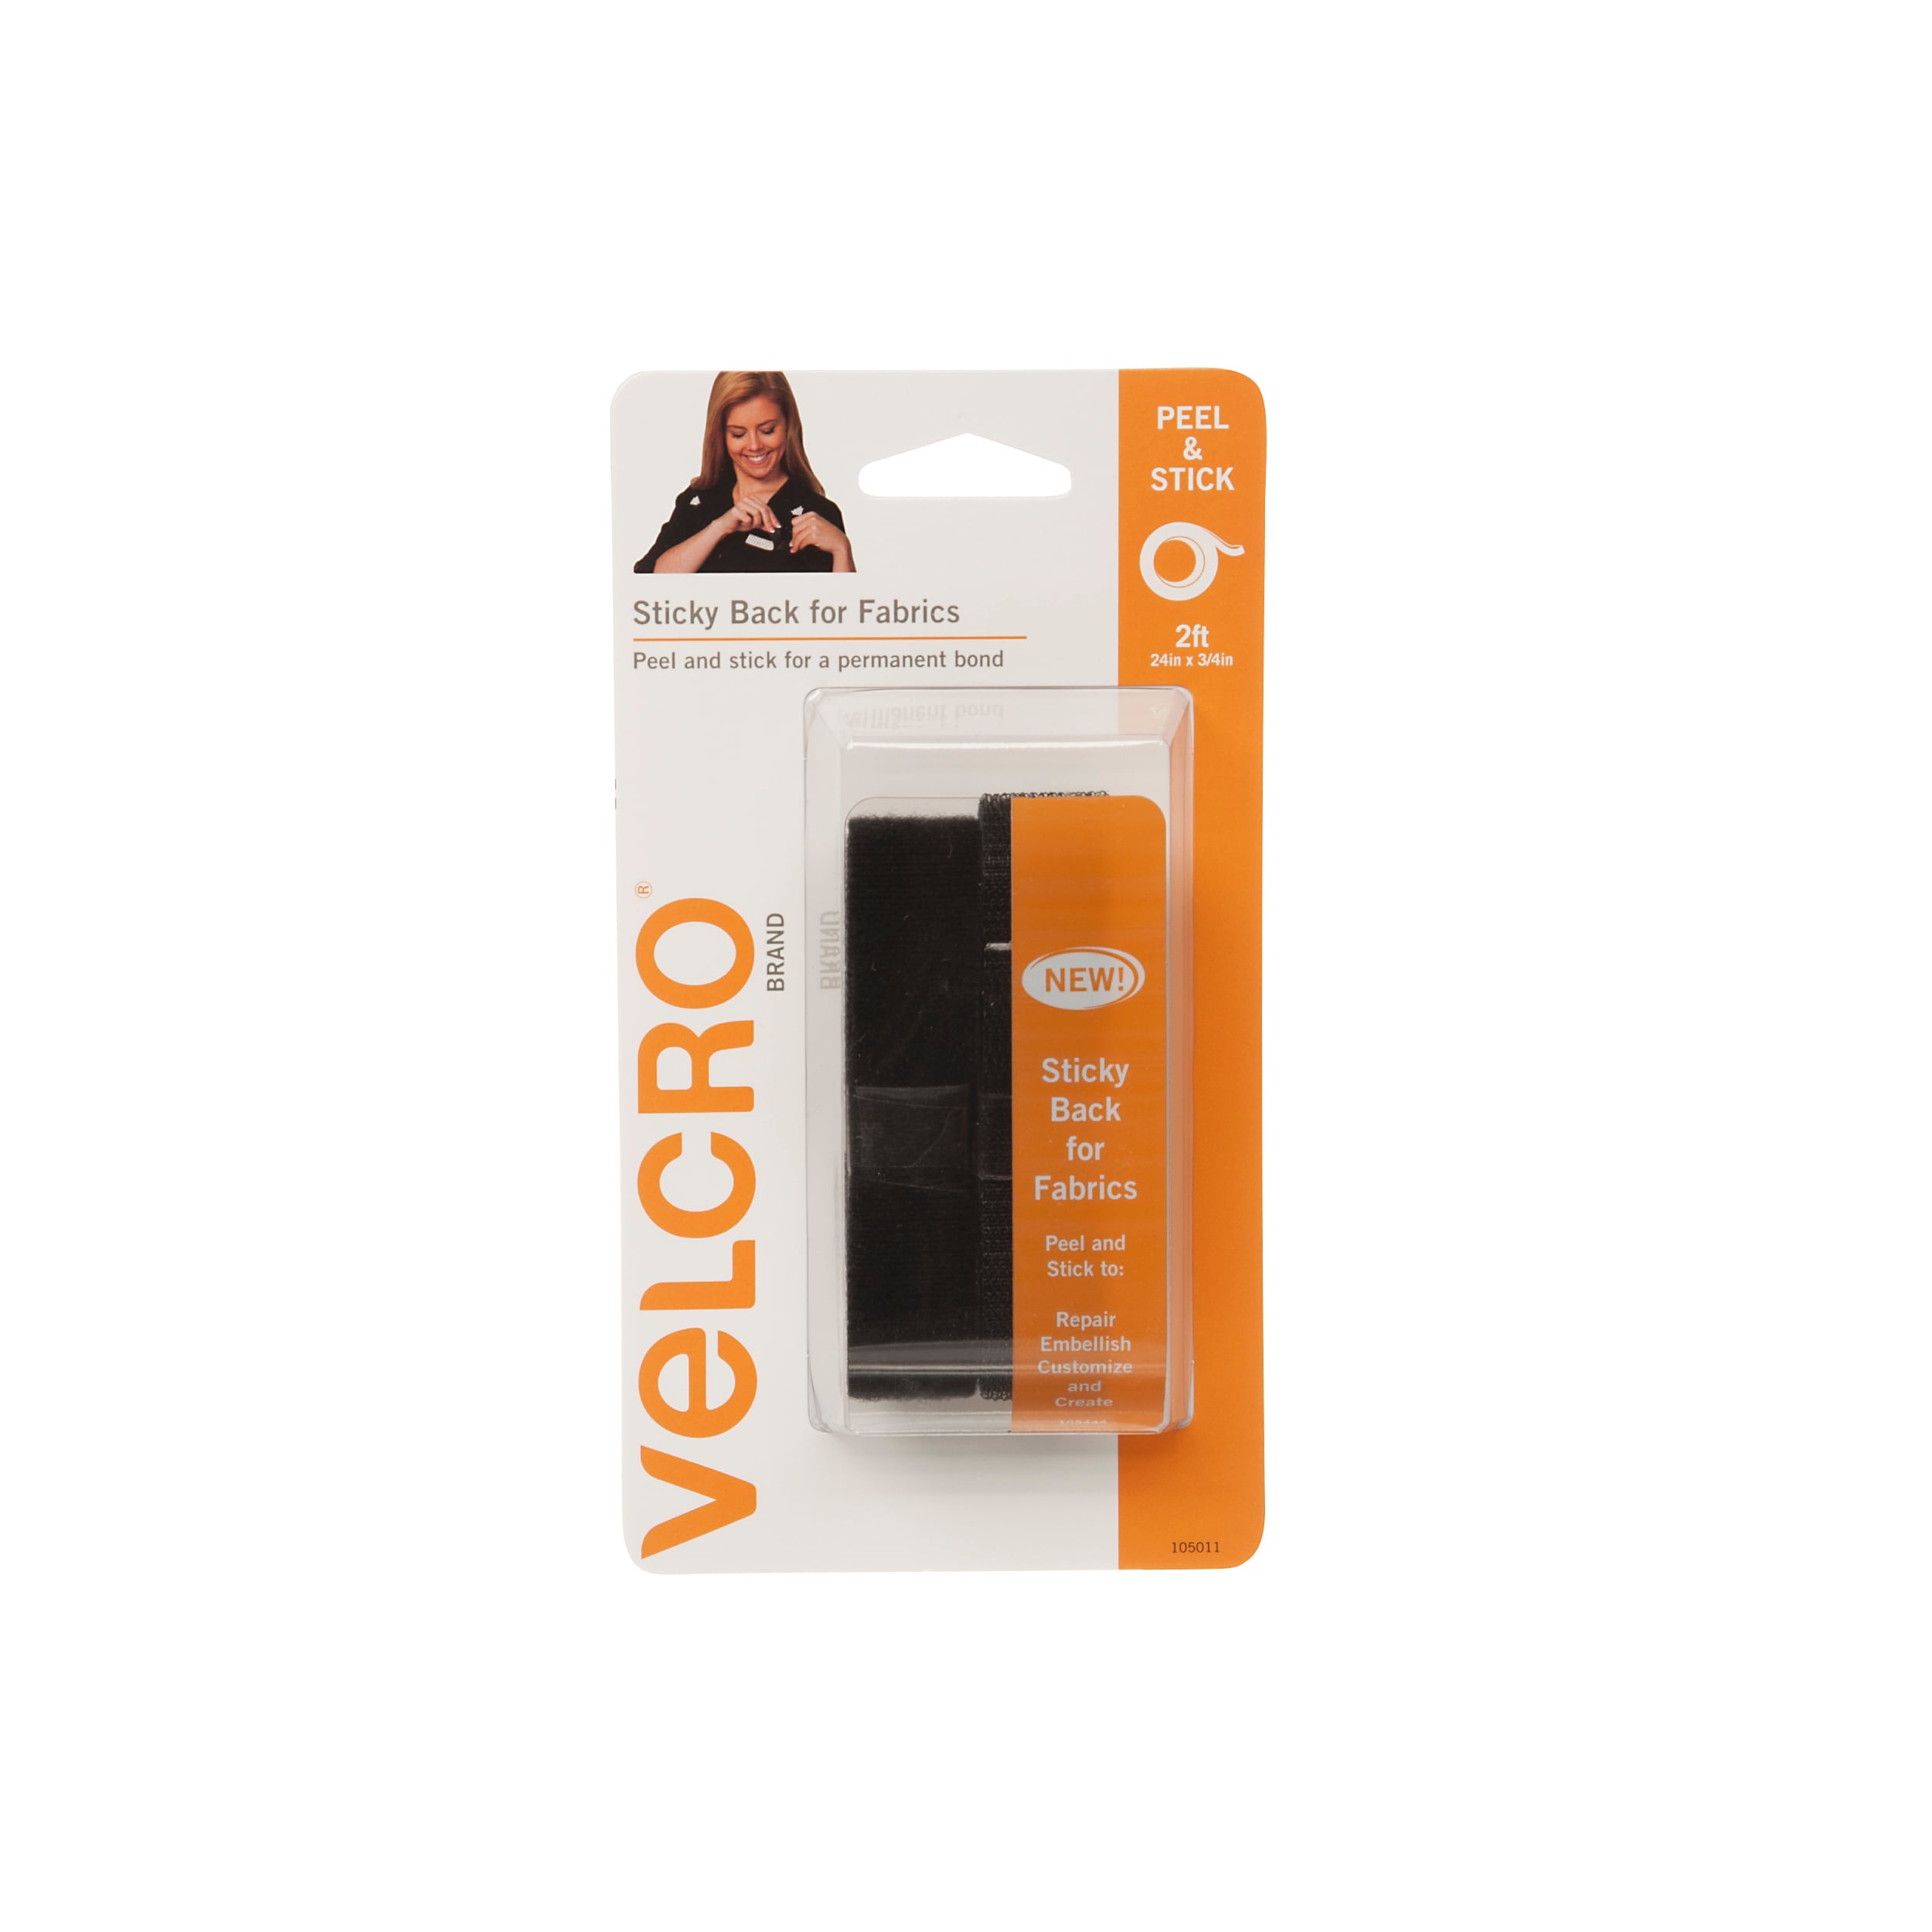 VELCRO® Brand Grip Hook and VELCRO® Brand Strip Loop